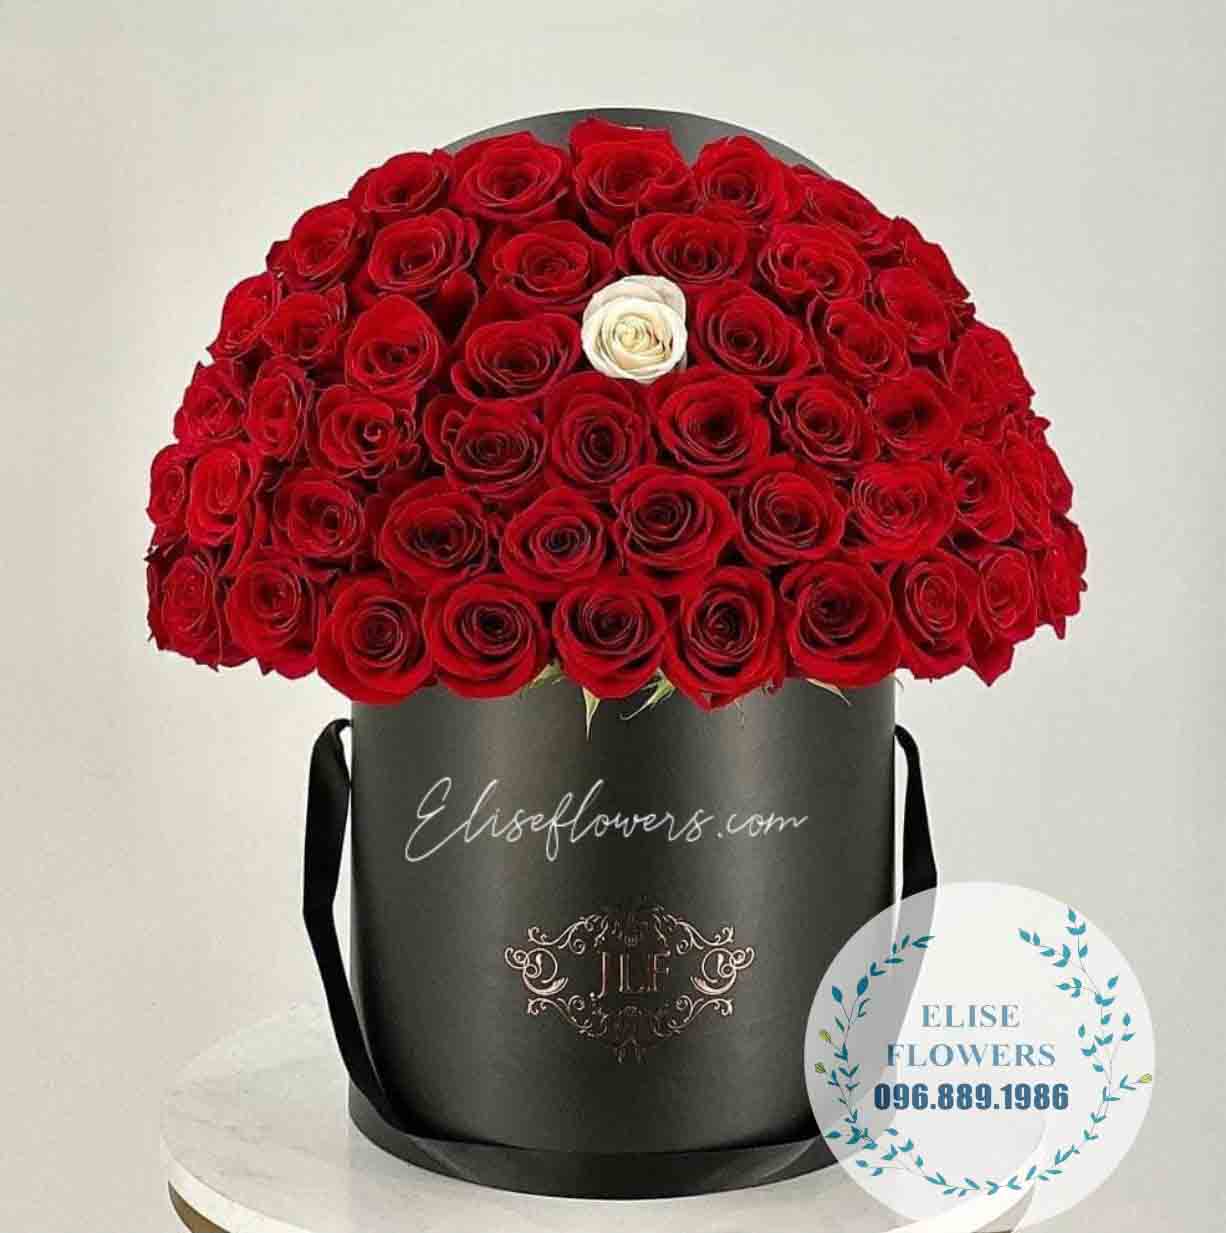 Hộp hoa hồng đỏ | Hộp hoa tình yêu | Hoa tặng vợ yêu, người yêu, người thương,... | Hoa tươi Hà Nội | Điện hoa tại quận Long Biên